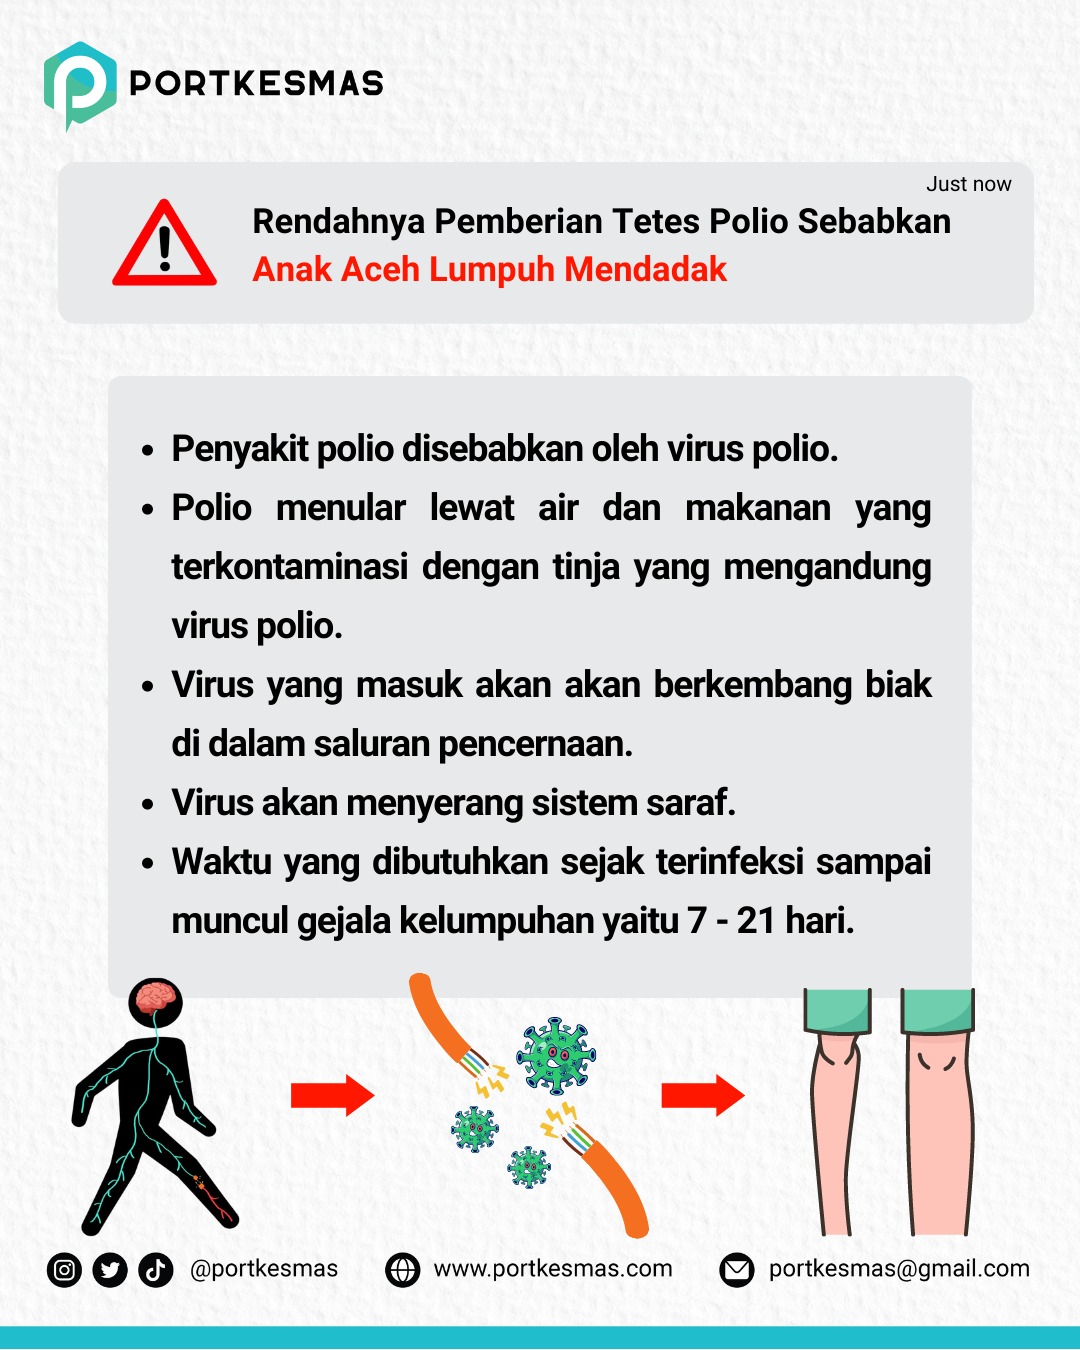 Polio di Indonesia dan cara mudah untuk mencegahnya